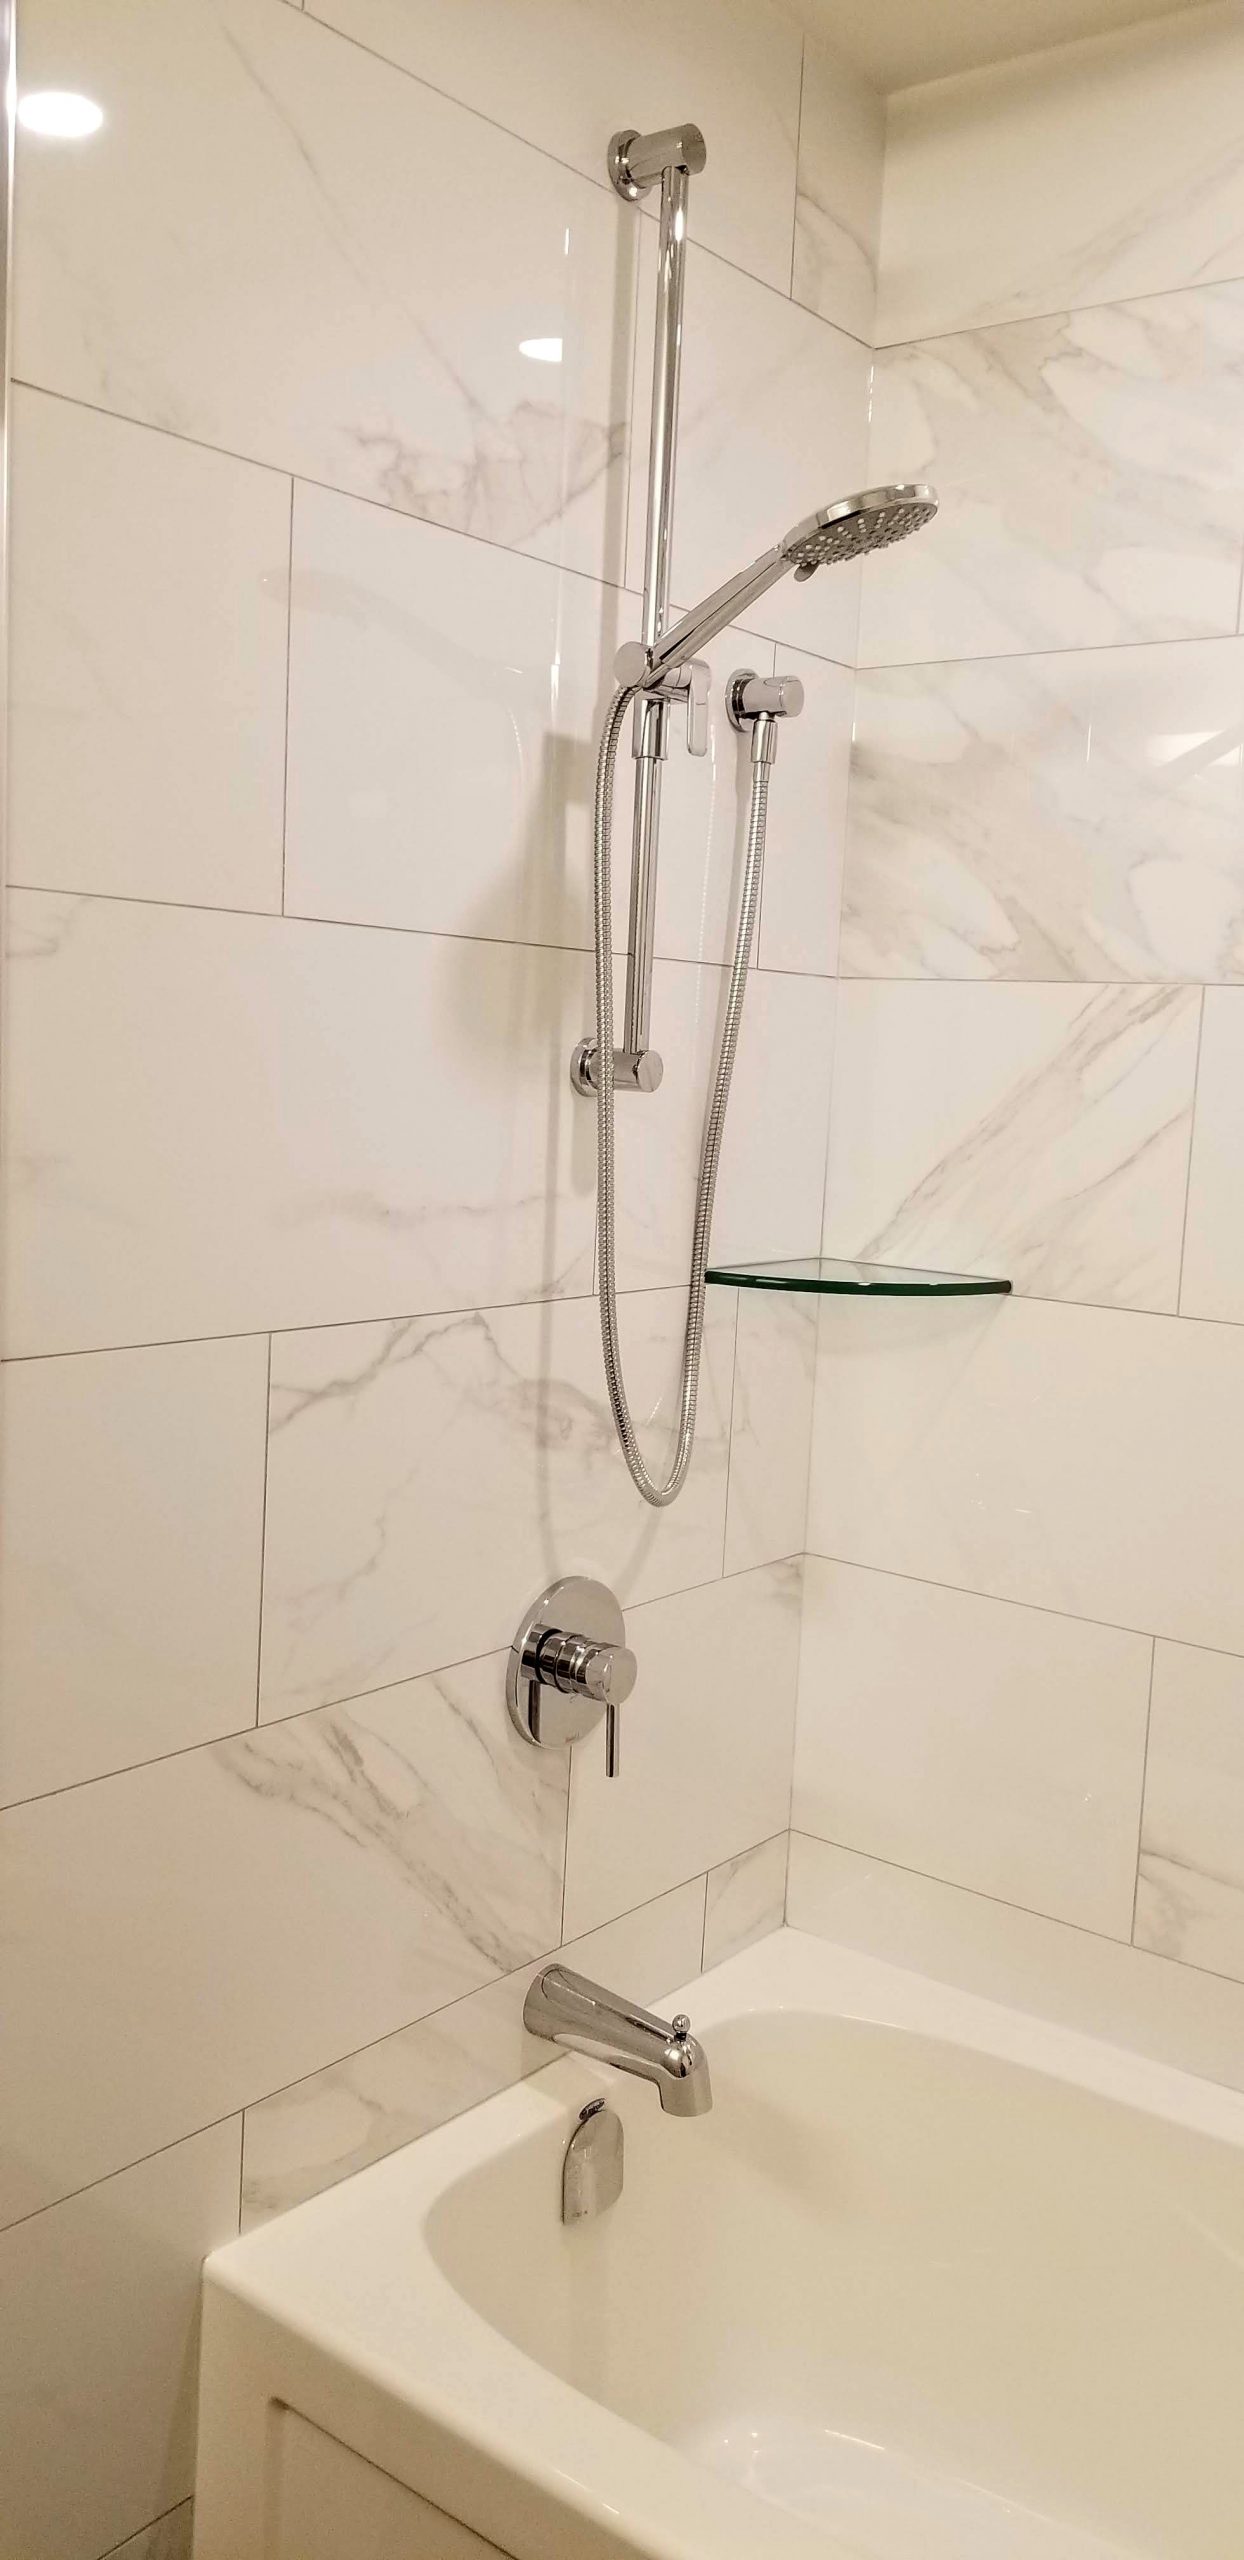 Shower fixtures